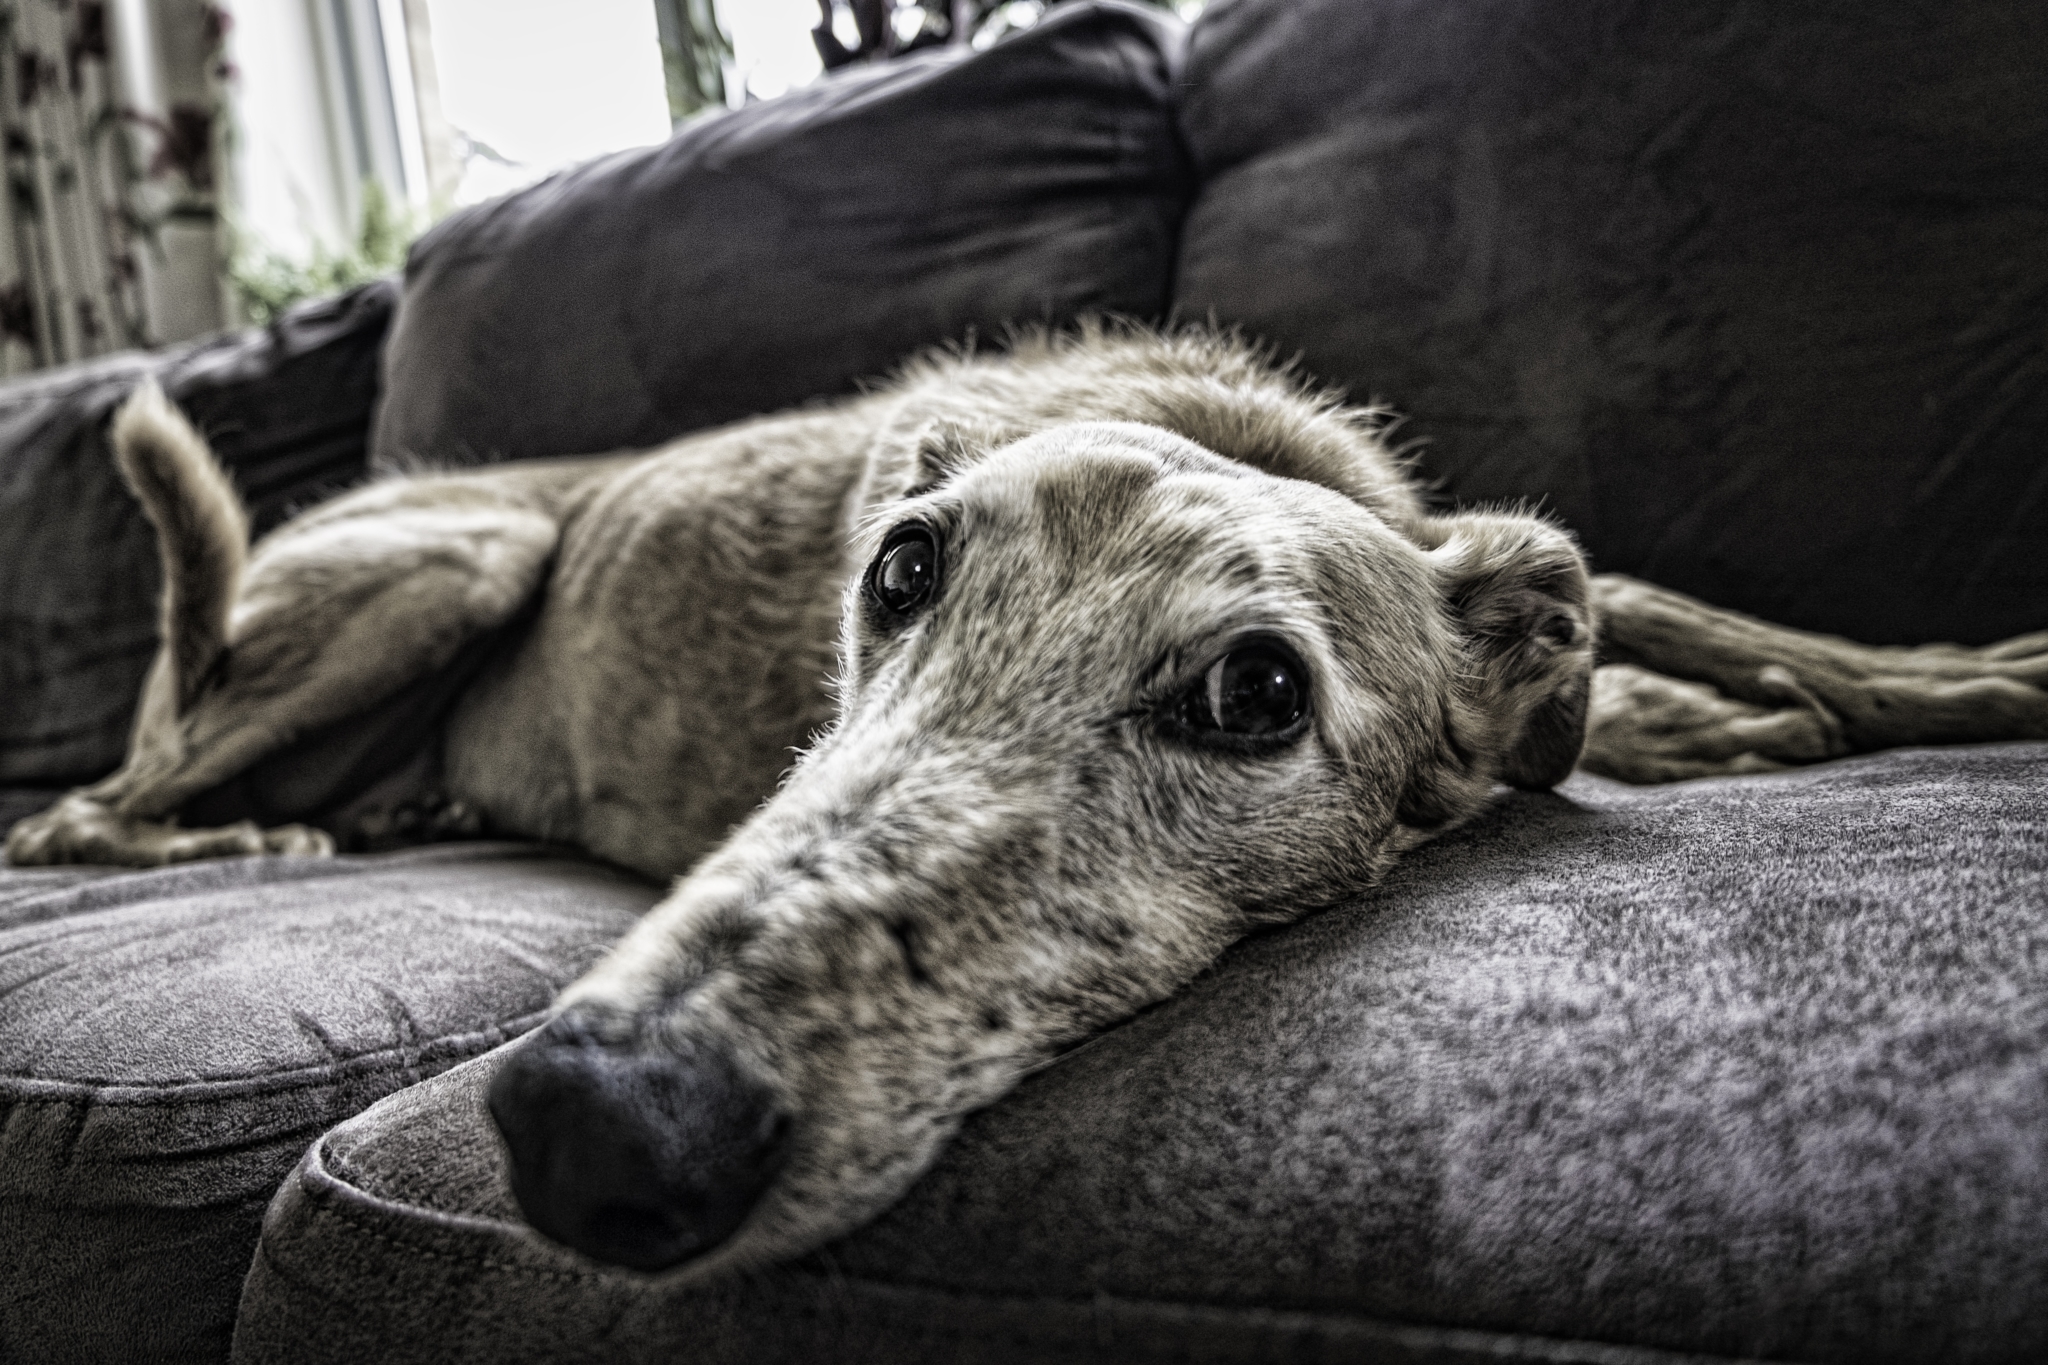 Keeping pets listen. Диван для собаки. Пес на диване. Животные под диваном. Собака под диваном.